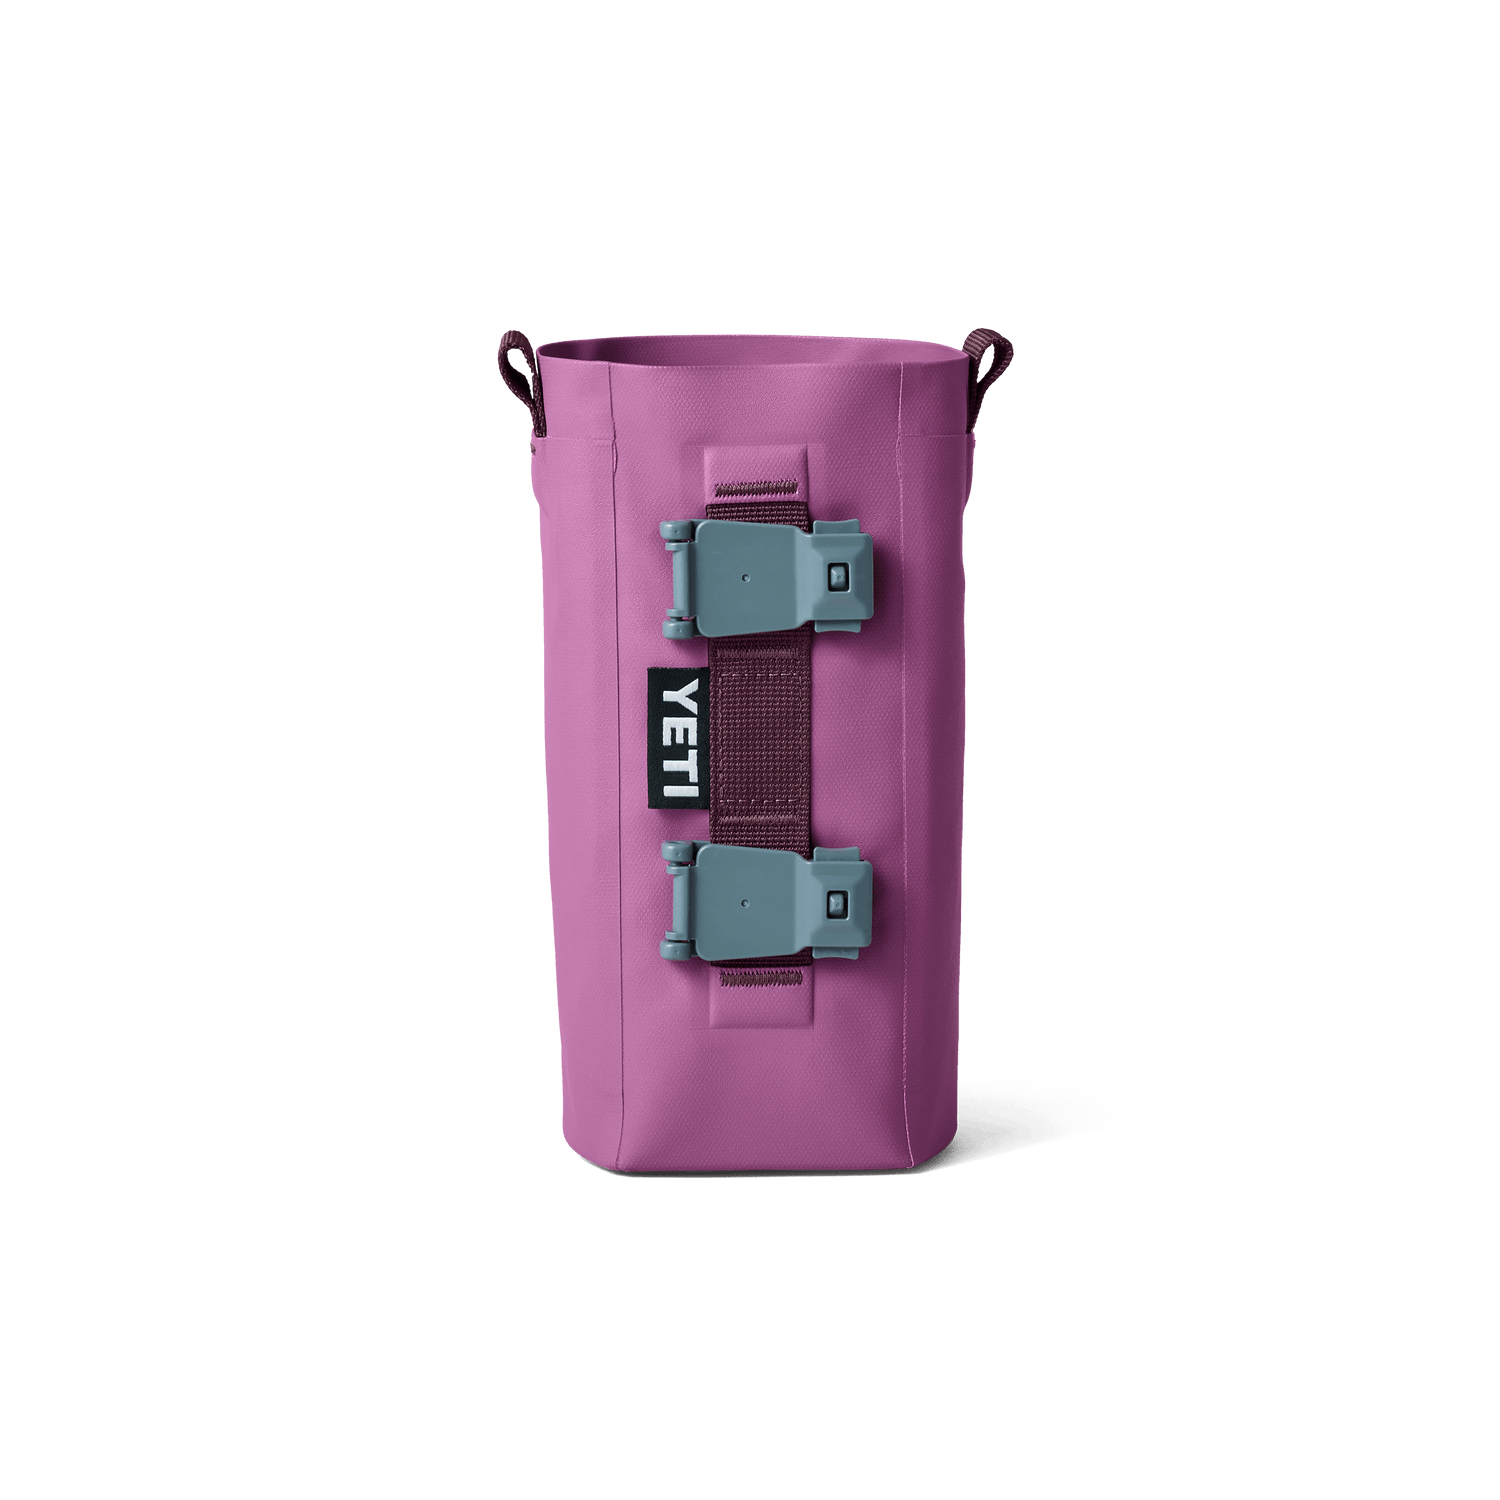 YETI Rambler® Bottle Sling Large Nordic Purple